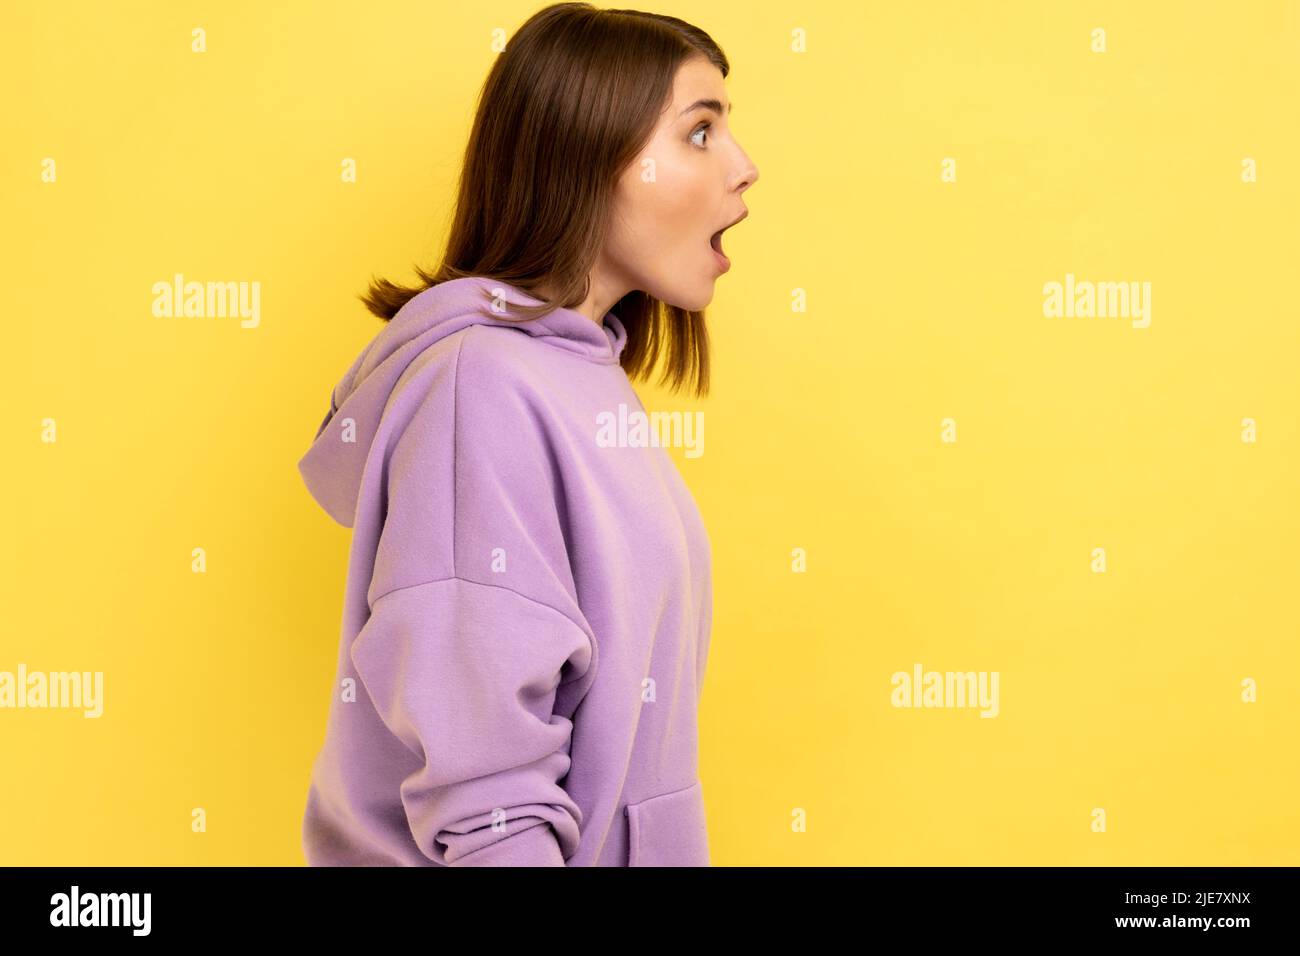 Profil der überraschten dunkelhaarigen Frau, die mit schockierten Gesichtsausdruck zur Seite schaut, hält den Mund weit offen und trägt einen violetten Hoodie. Innenaufnahme des Studios isoliert auf gelbem Hintergrund. Stockfoto